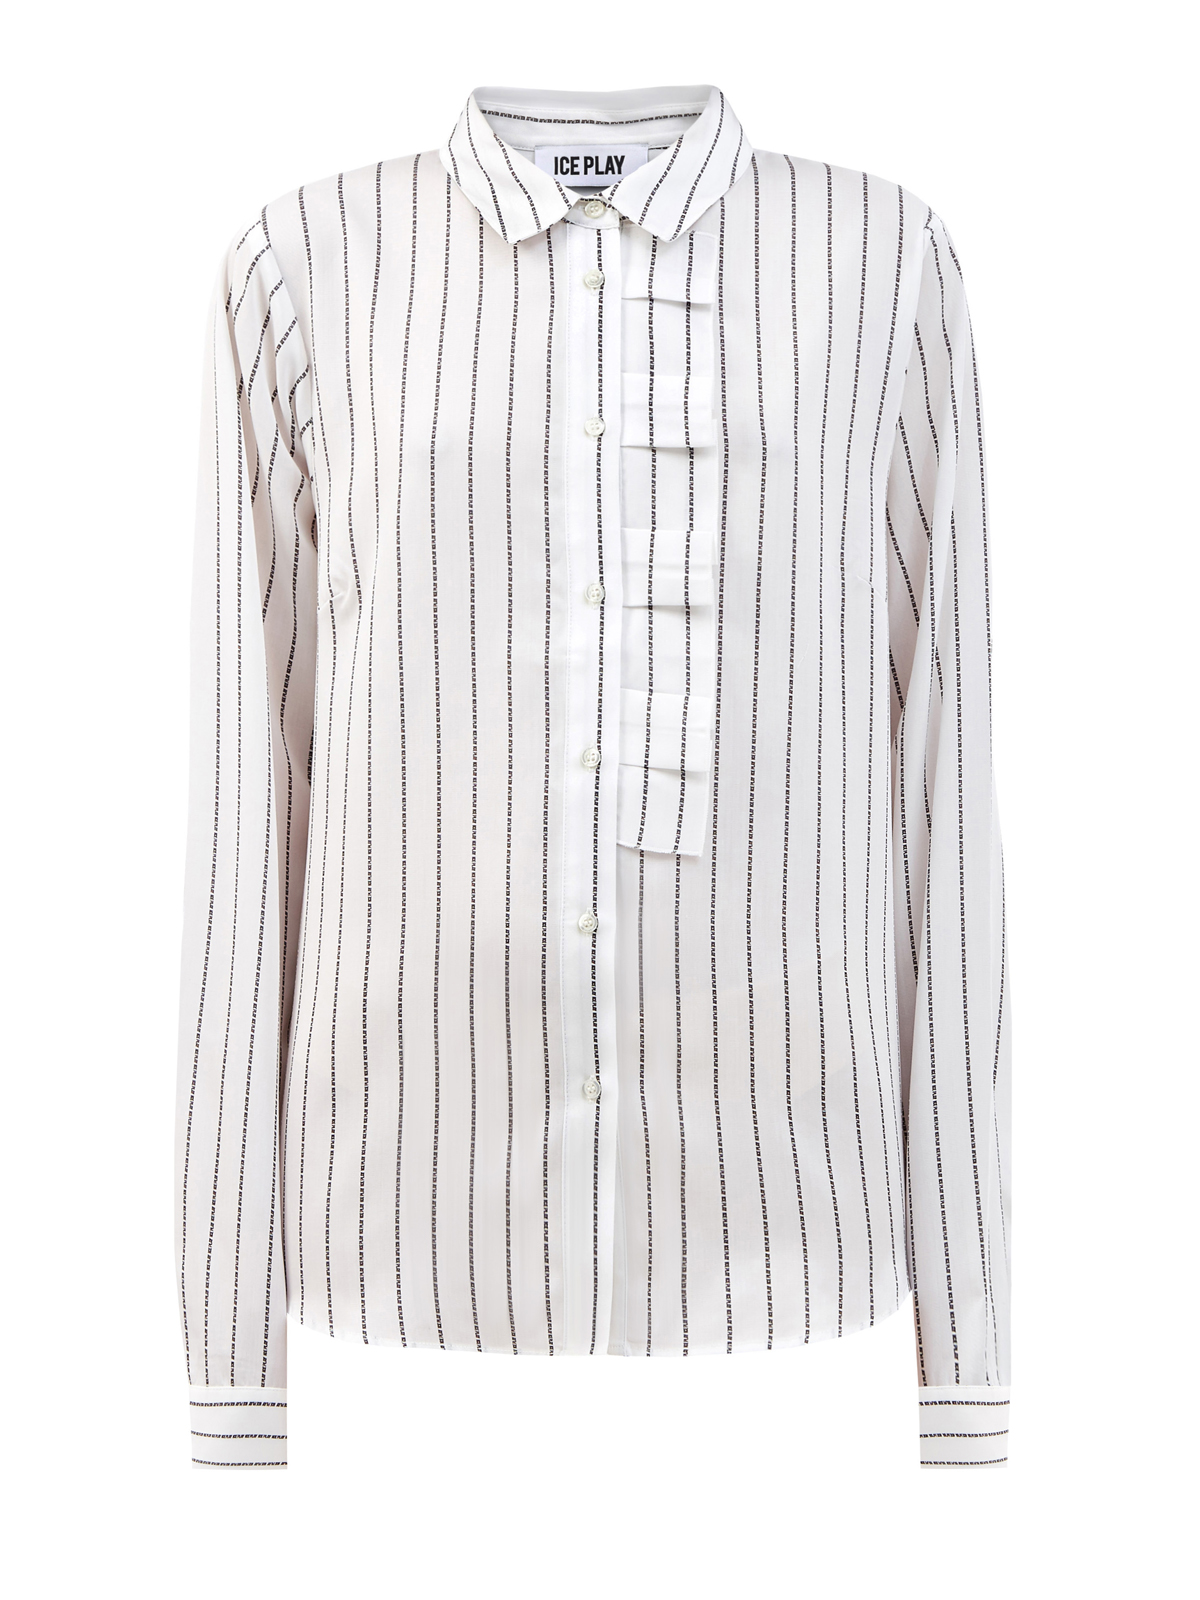 Элегантная рубашка из гладкого лиоцелла с принтом ICE PLAY, цвет белый, размер S;M;L;XL